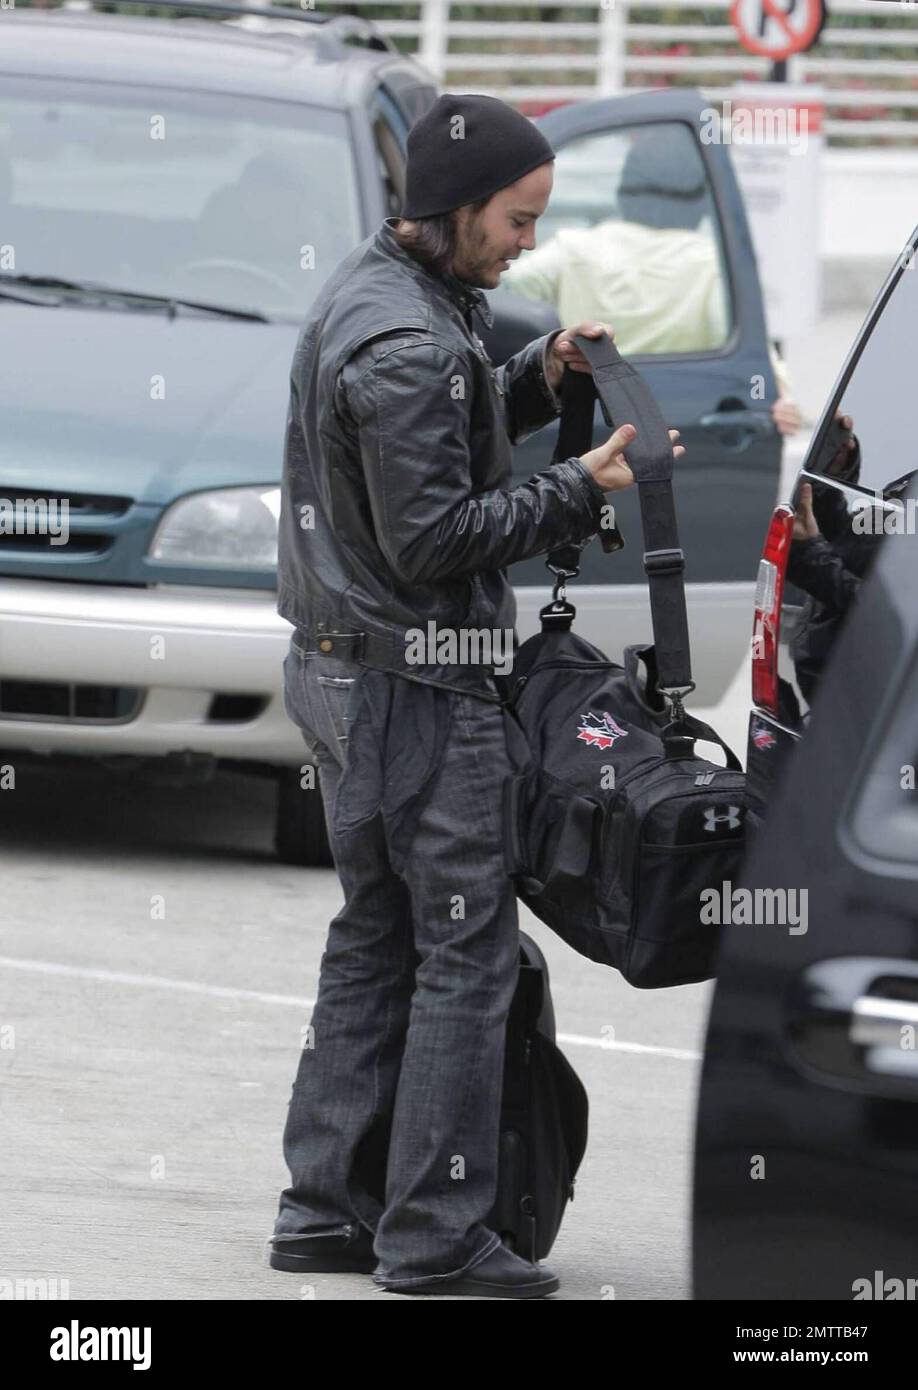 Taylor Kitsch schleppt seine eigenen Taschen auf dem Weg durch LAX, um einen Flug zu erwischen. Der X-Men Schauspieler trug eine Lederjacke und einen Hut, musste aber einige Schichten für die Sicherheitskontrolle ausziehen. Los Angeles, Ca. 6/2/09. Stockfoto